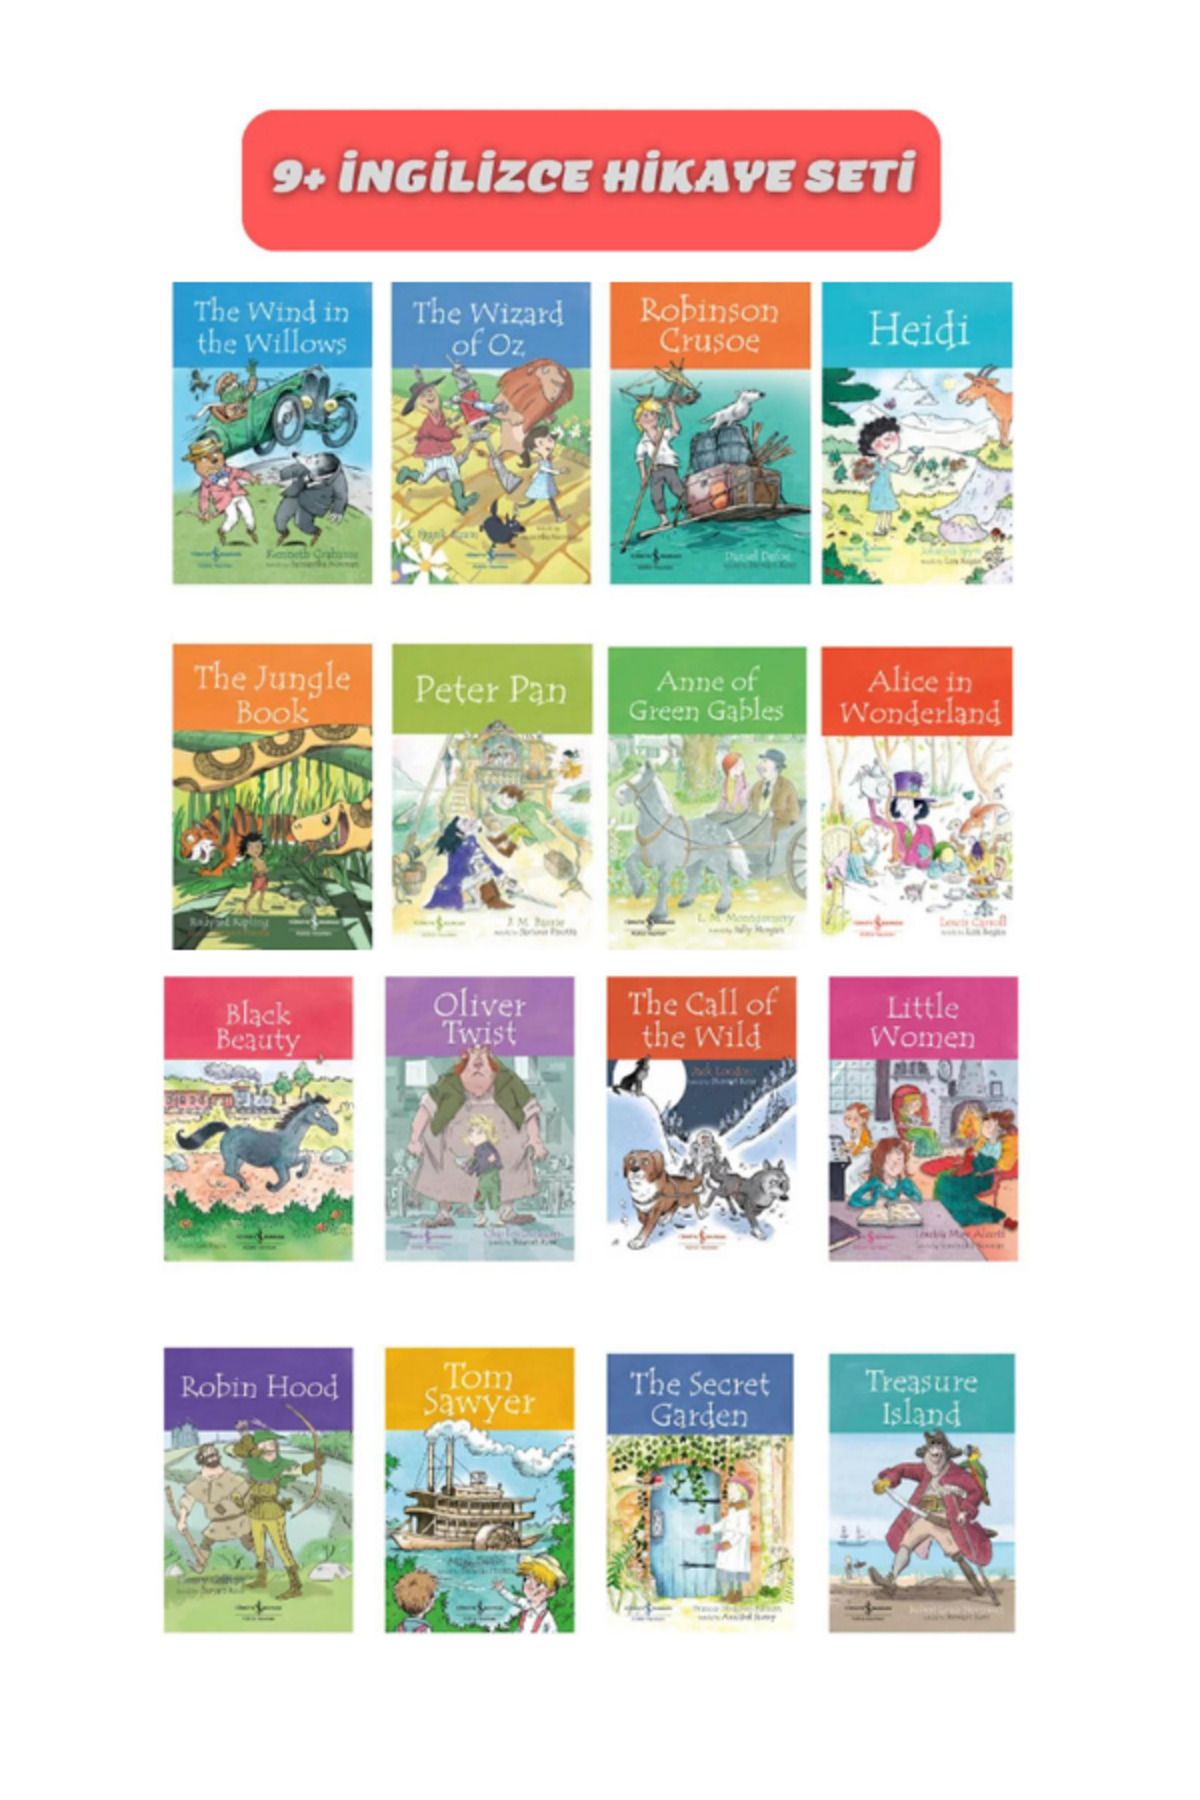 ismega İngilizce Çocuk Kitapları Hikaye Seti 9+ Yaş 16'lı Eğitici Set ingilizce Okuma Ve Anlamaya Yardımcı